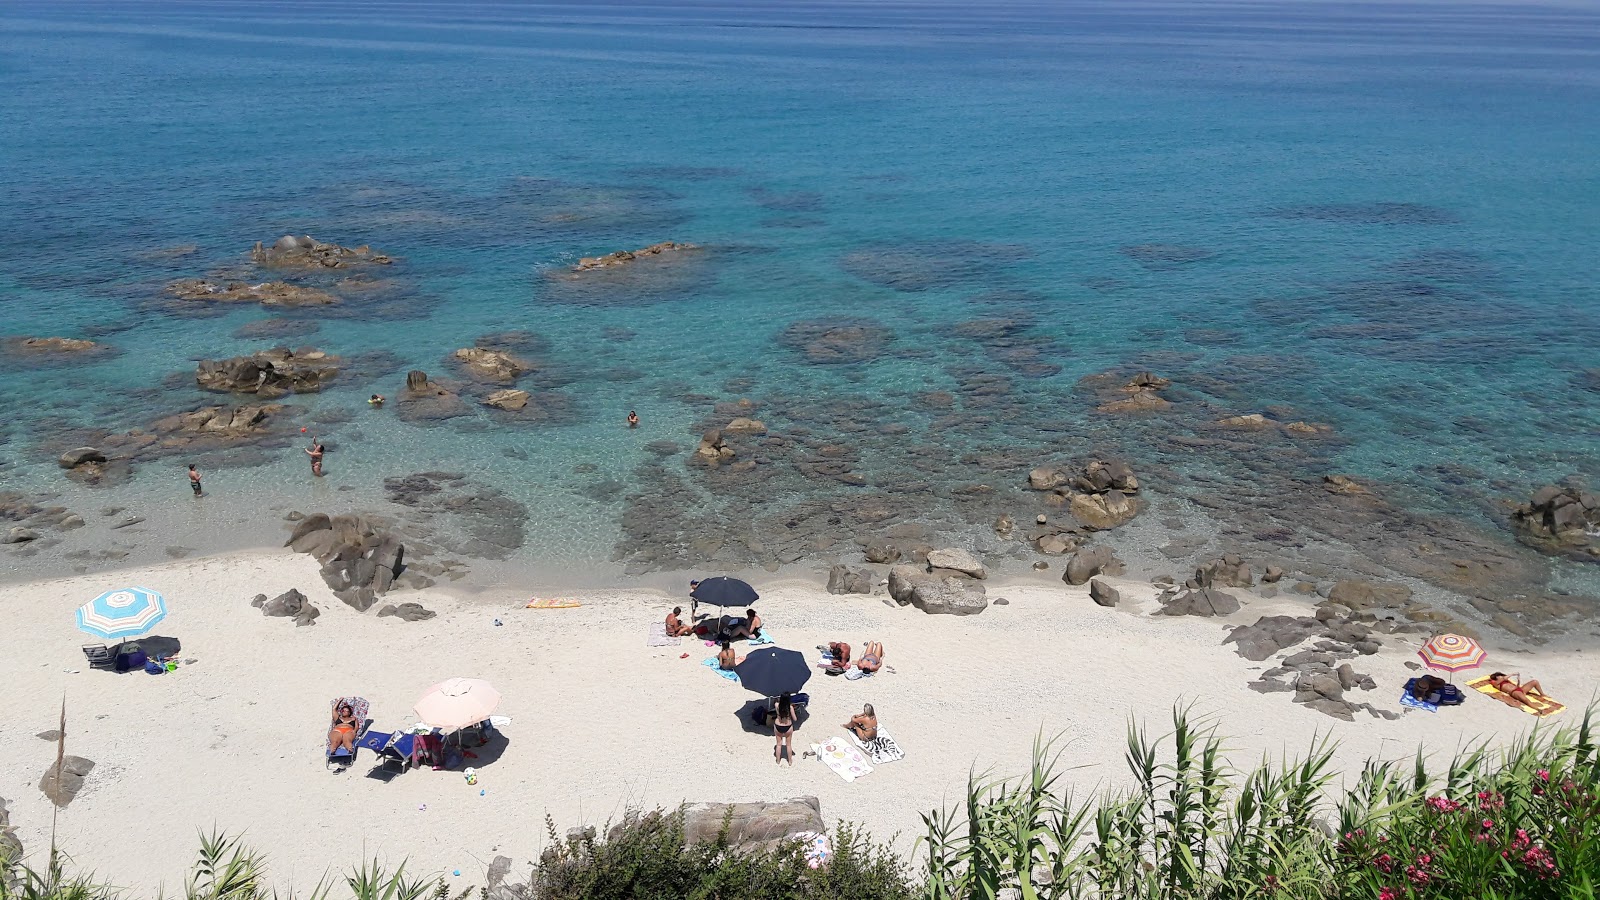 Punta scrugli beach'in fotoğrafı hafif ince çakıl taş yüzey ile